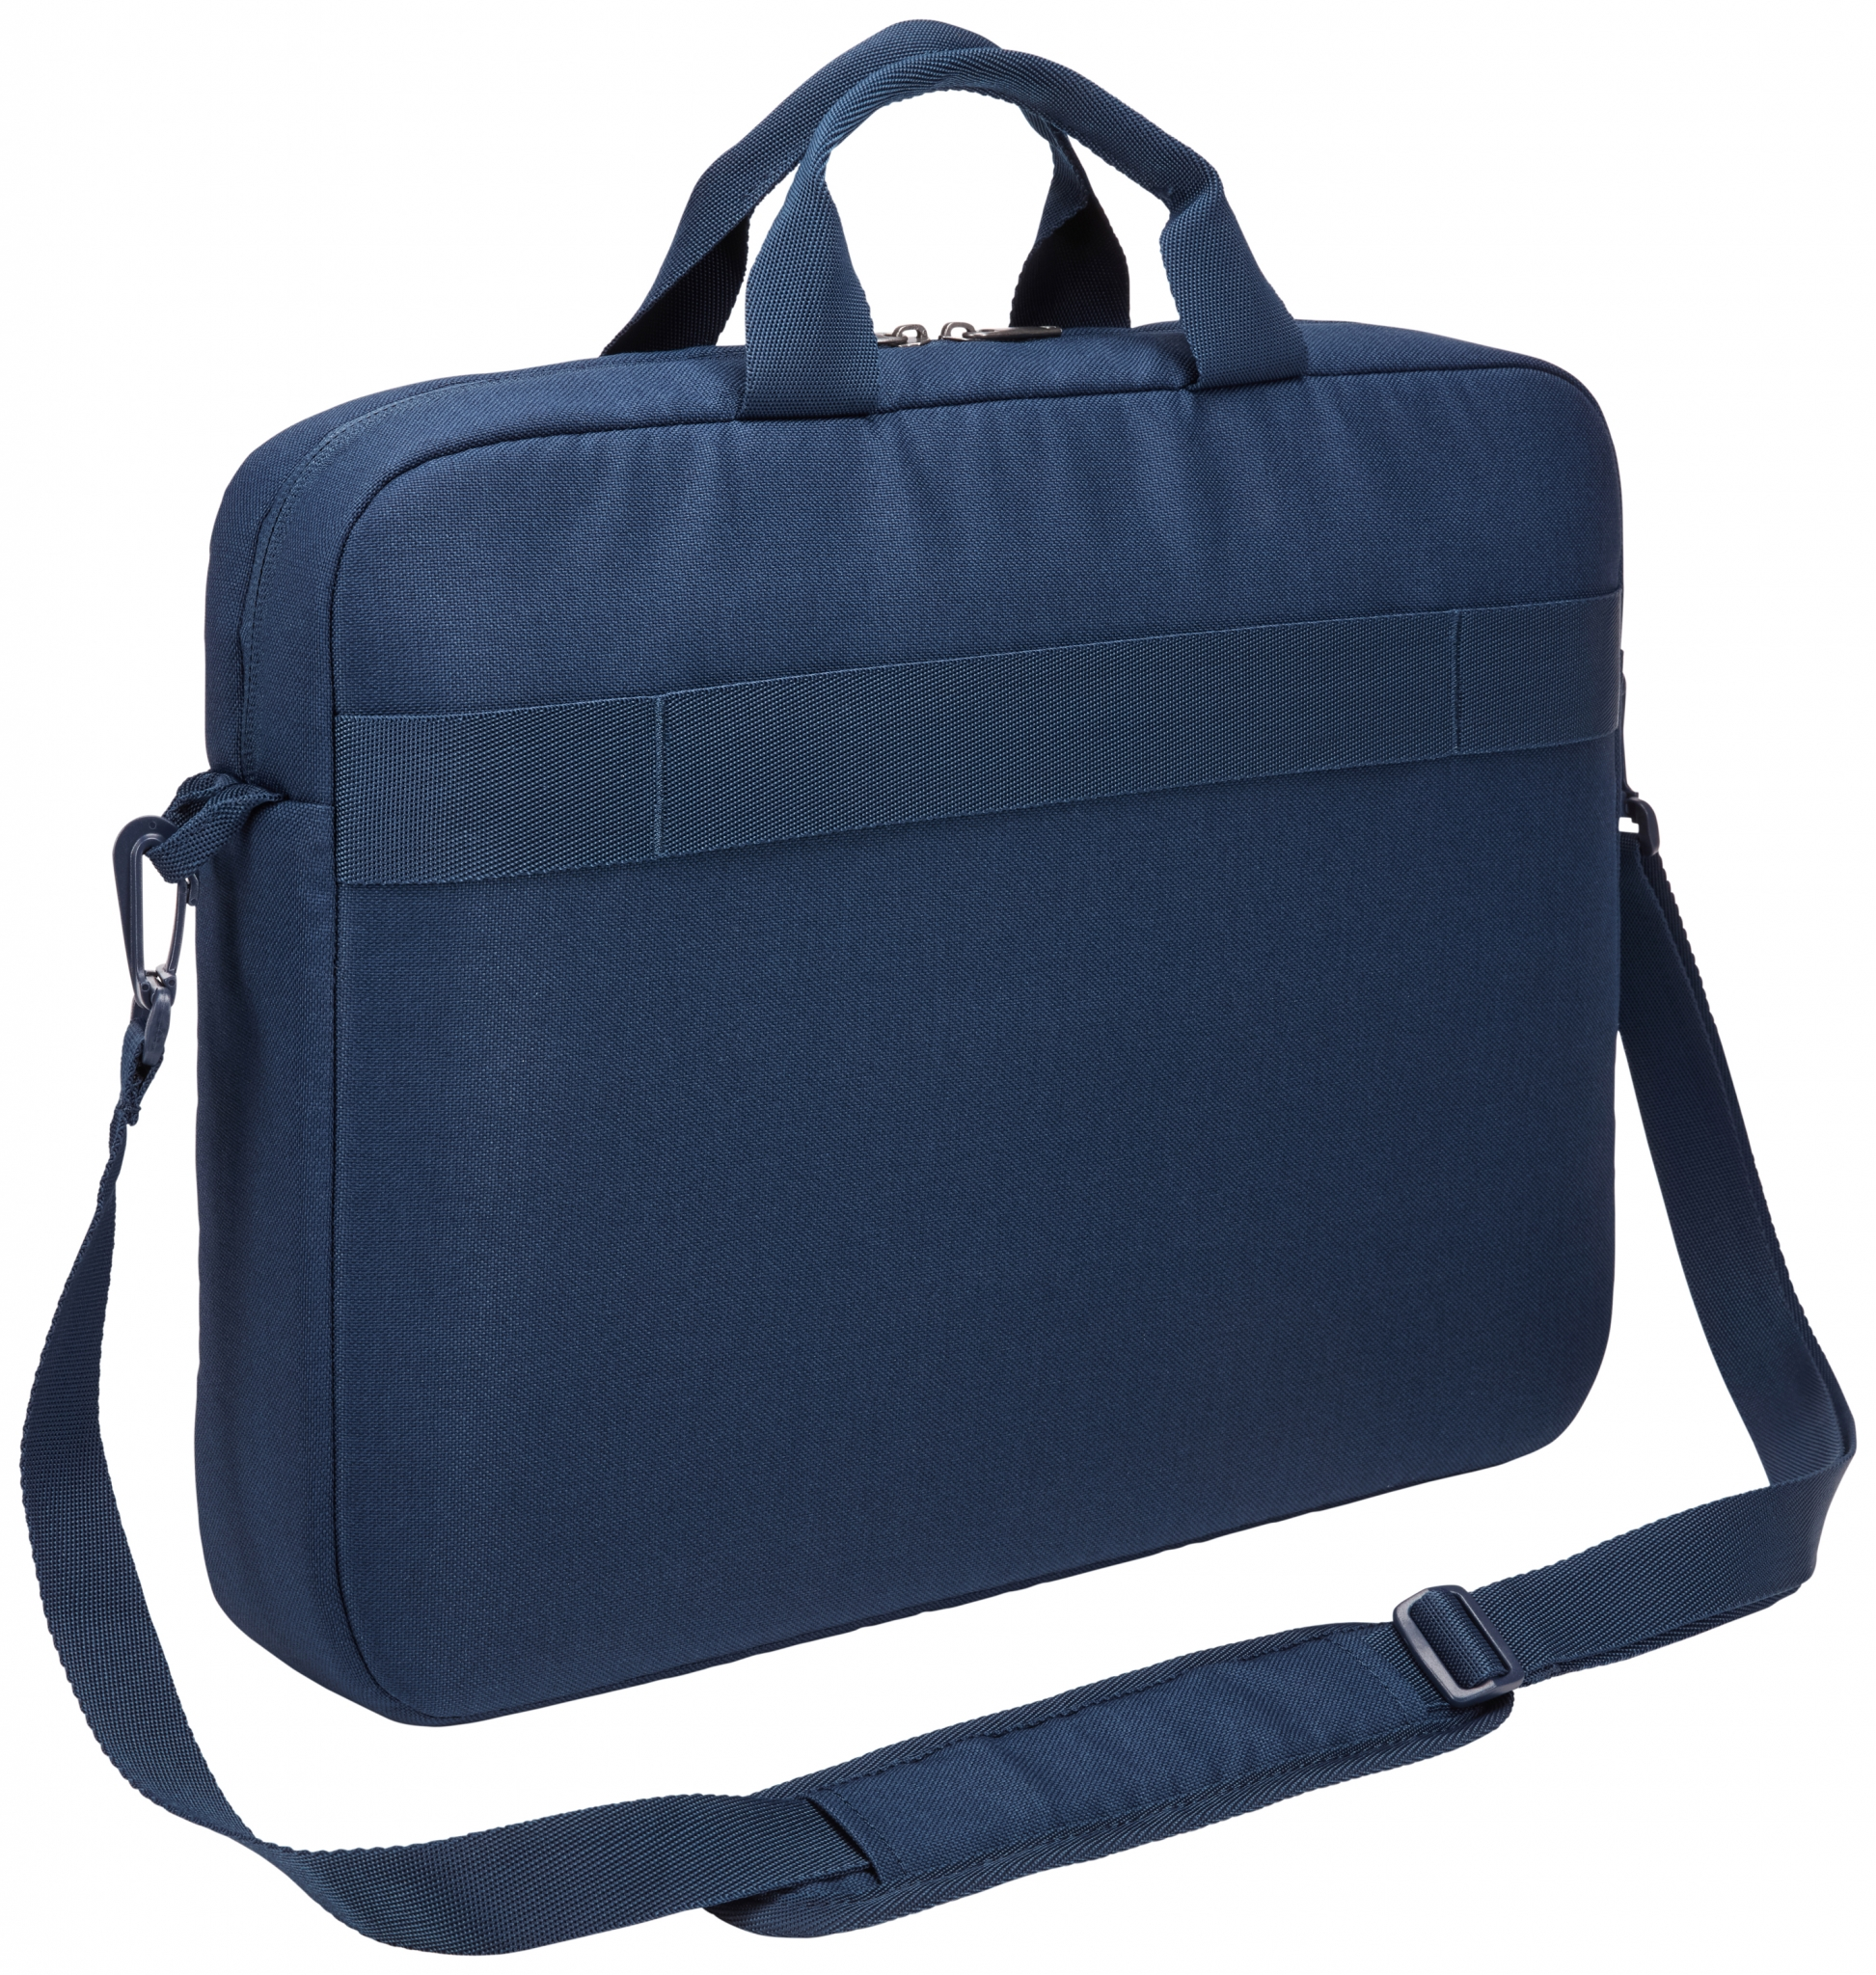 CASE LOGIC Advantage Notebooktasche Blau Universal Umhängetasche Polyester, für Dunkel